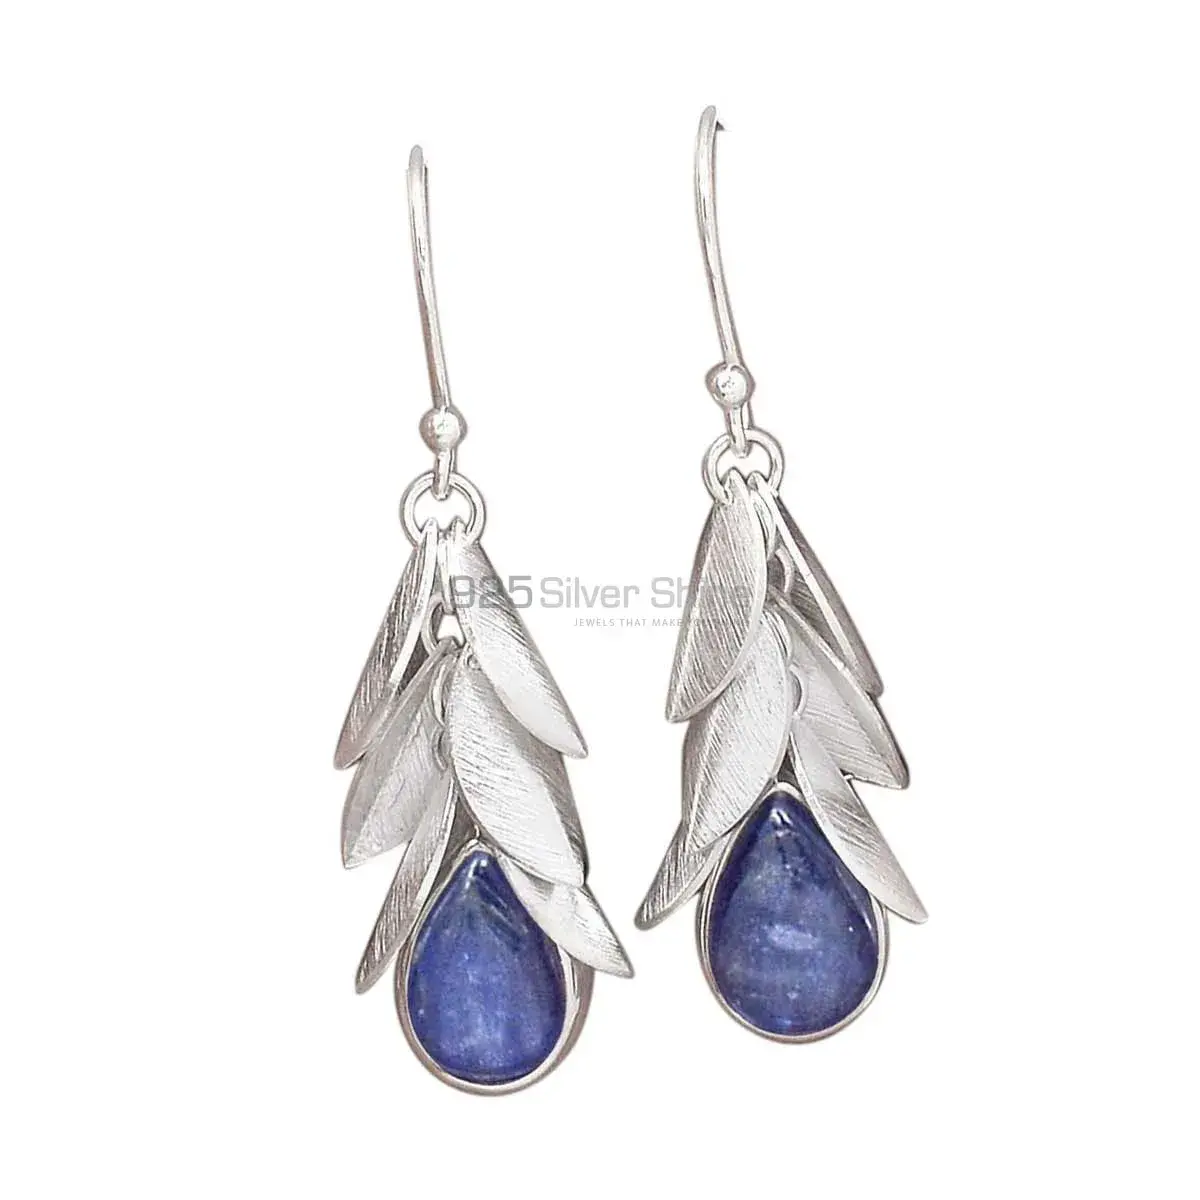 Inexpensive 925 Sterling Silver Handmade Earrings Suppliers In Kyanite Gemstone Jewelry 925SE3035